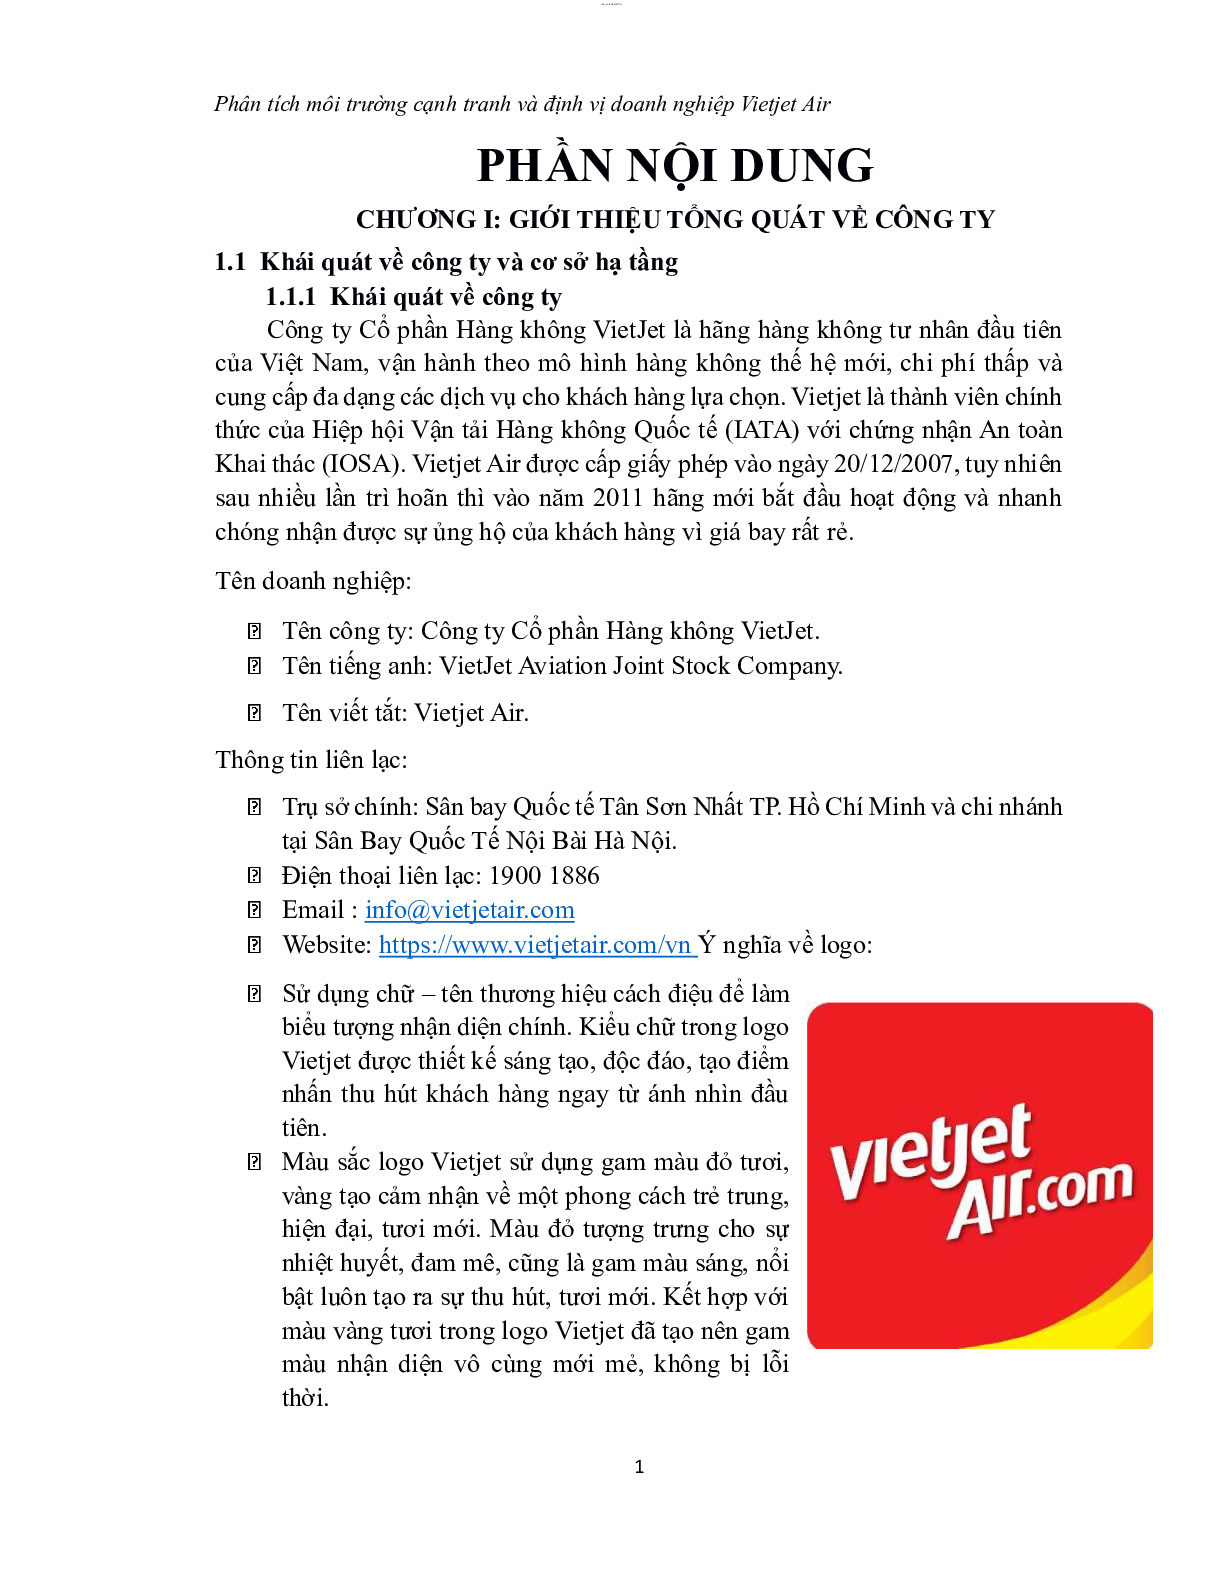 Tiểu luận: Phân tích môi trường cạnh tranh và định vị doanh nghiệp công ty cổ phần hàng không Vietjet Air | VKU (trang 8)